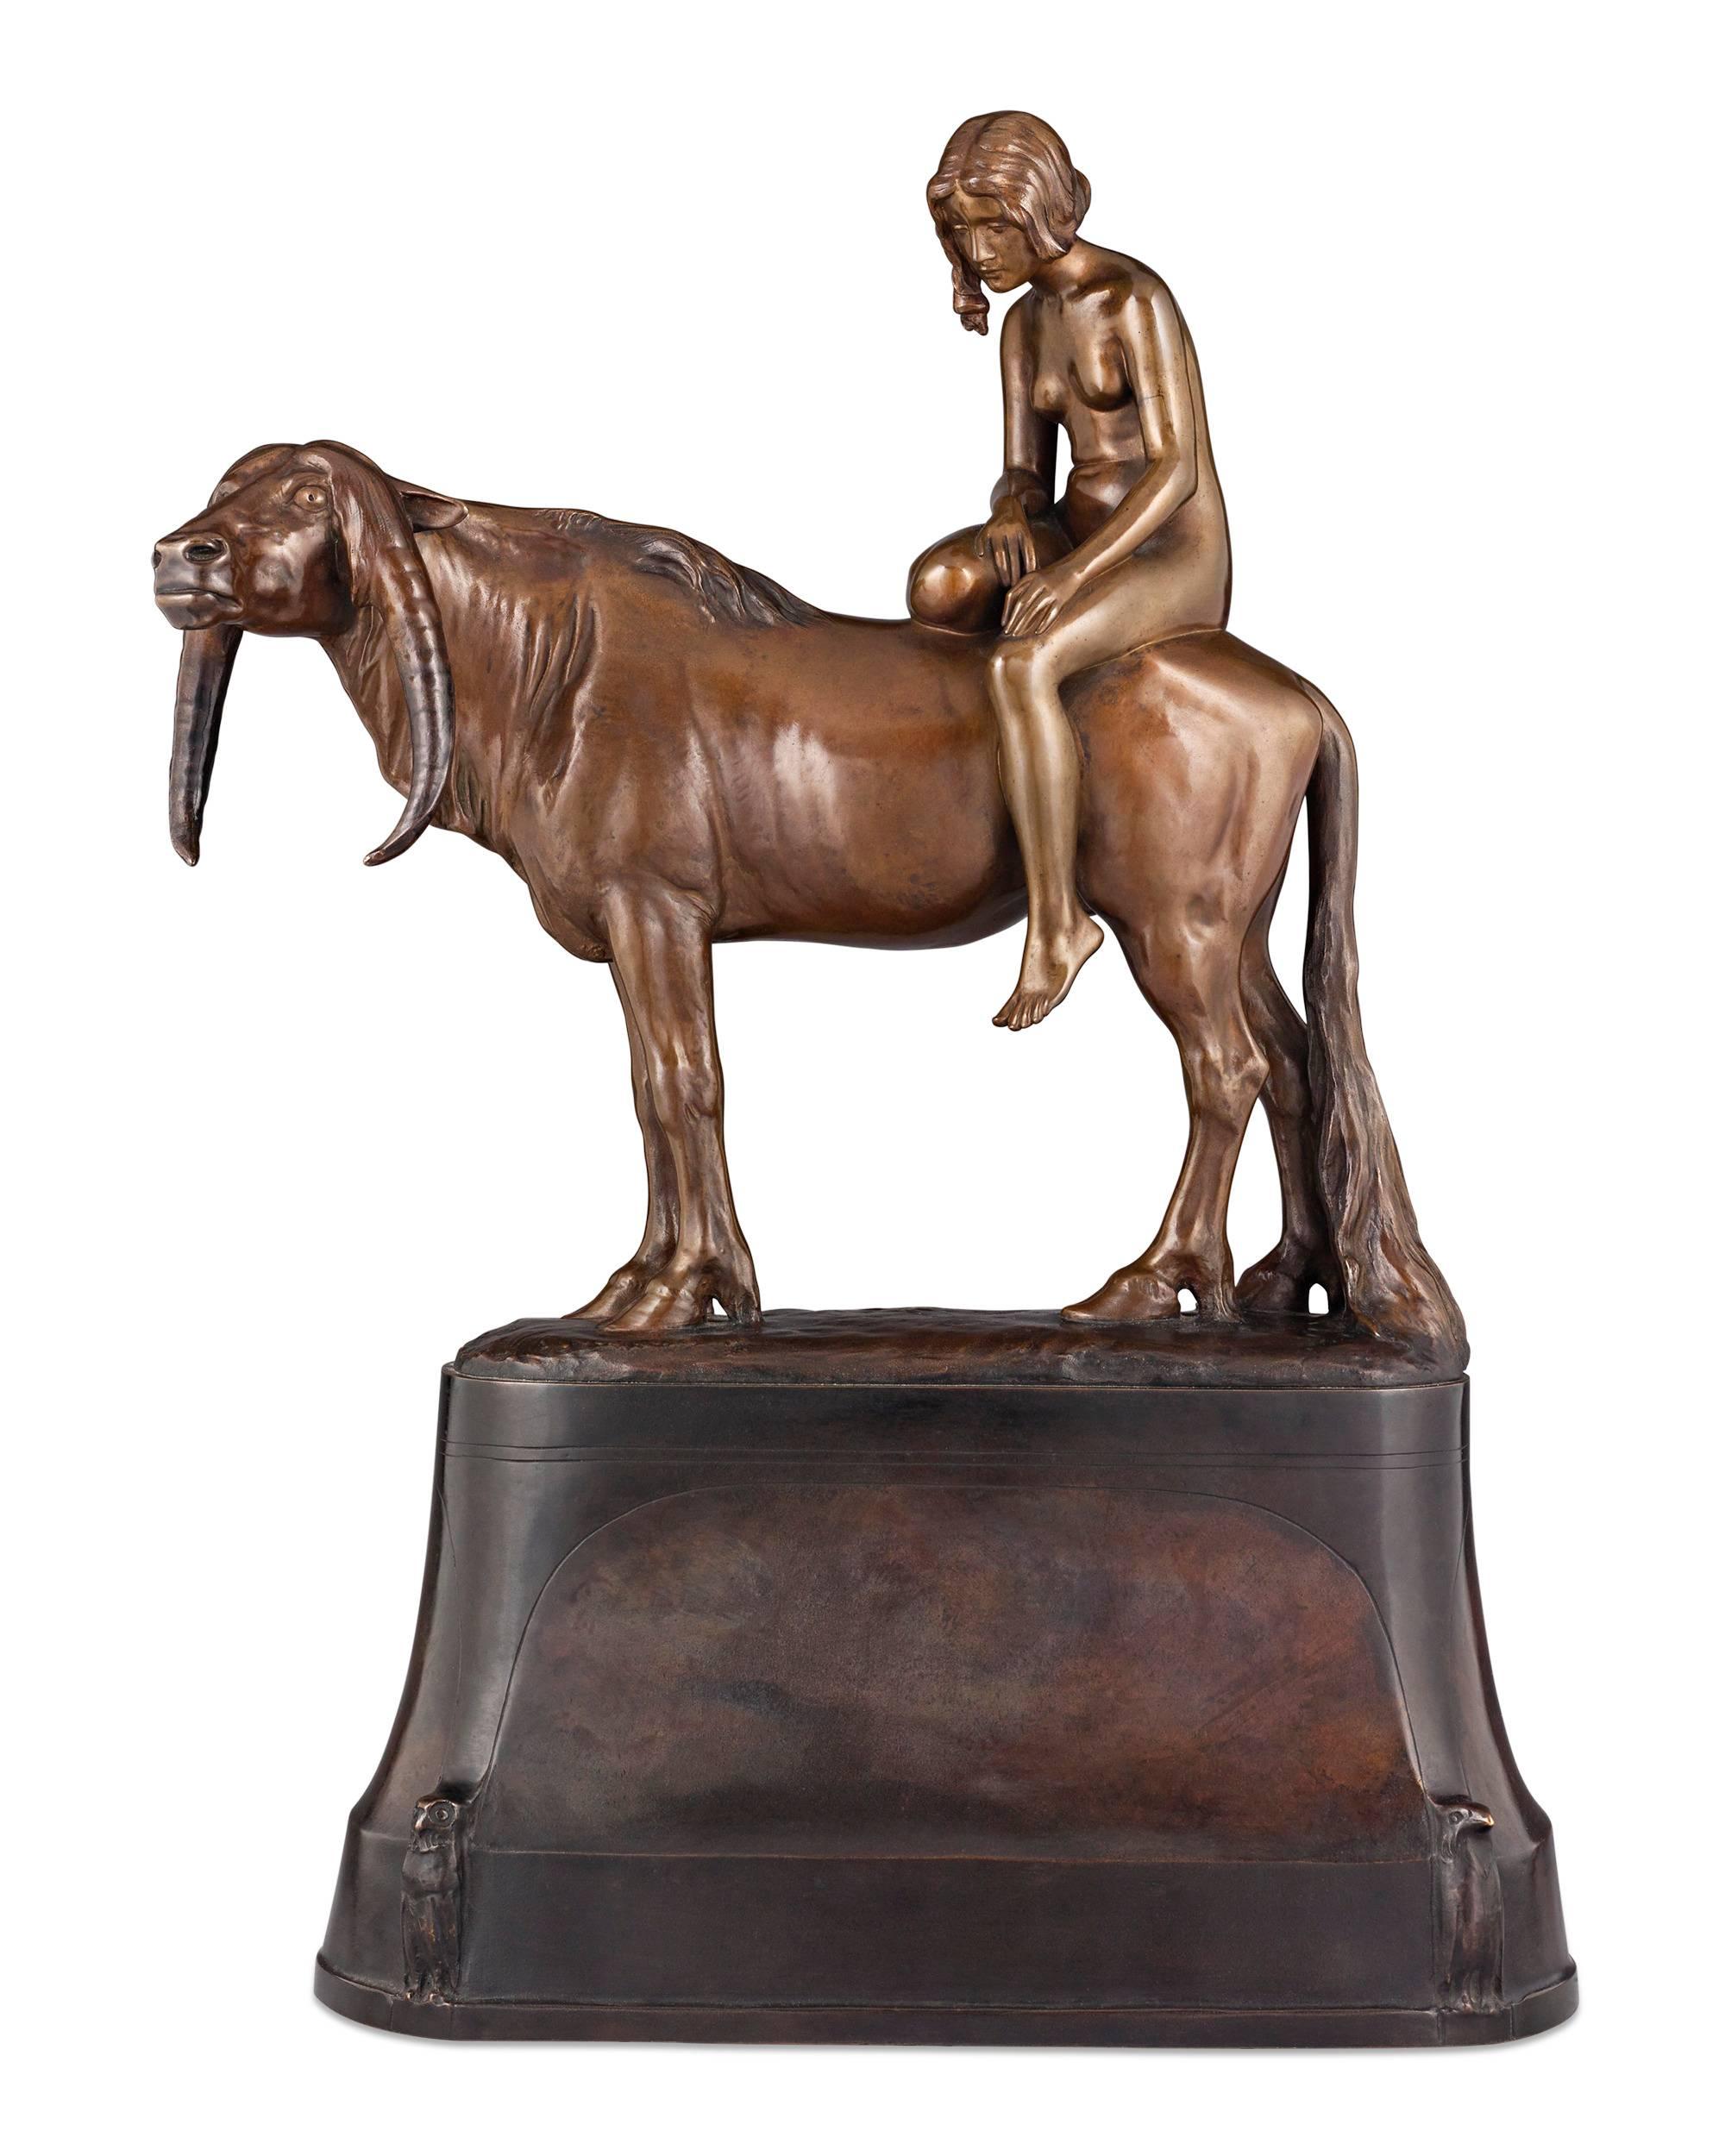 Œuvre poignante d'un art extraordinaire, cette figurine en bronze reprend le récit mythique d'Europe, la belle princesse phénicienne qui fut enlevée par le roi des dieux de l'Olympe, Zeus. Parmi les histoires les plus connues de la mythologie et un